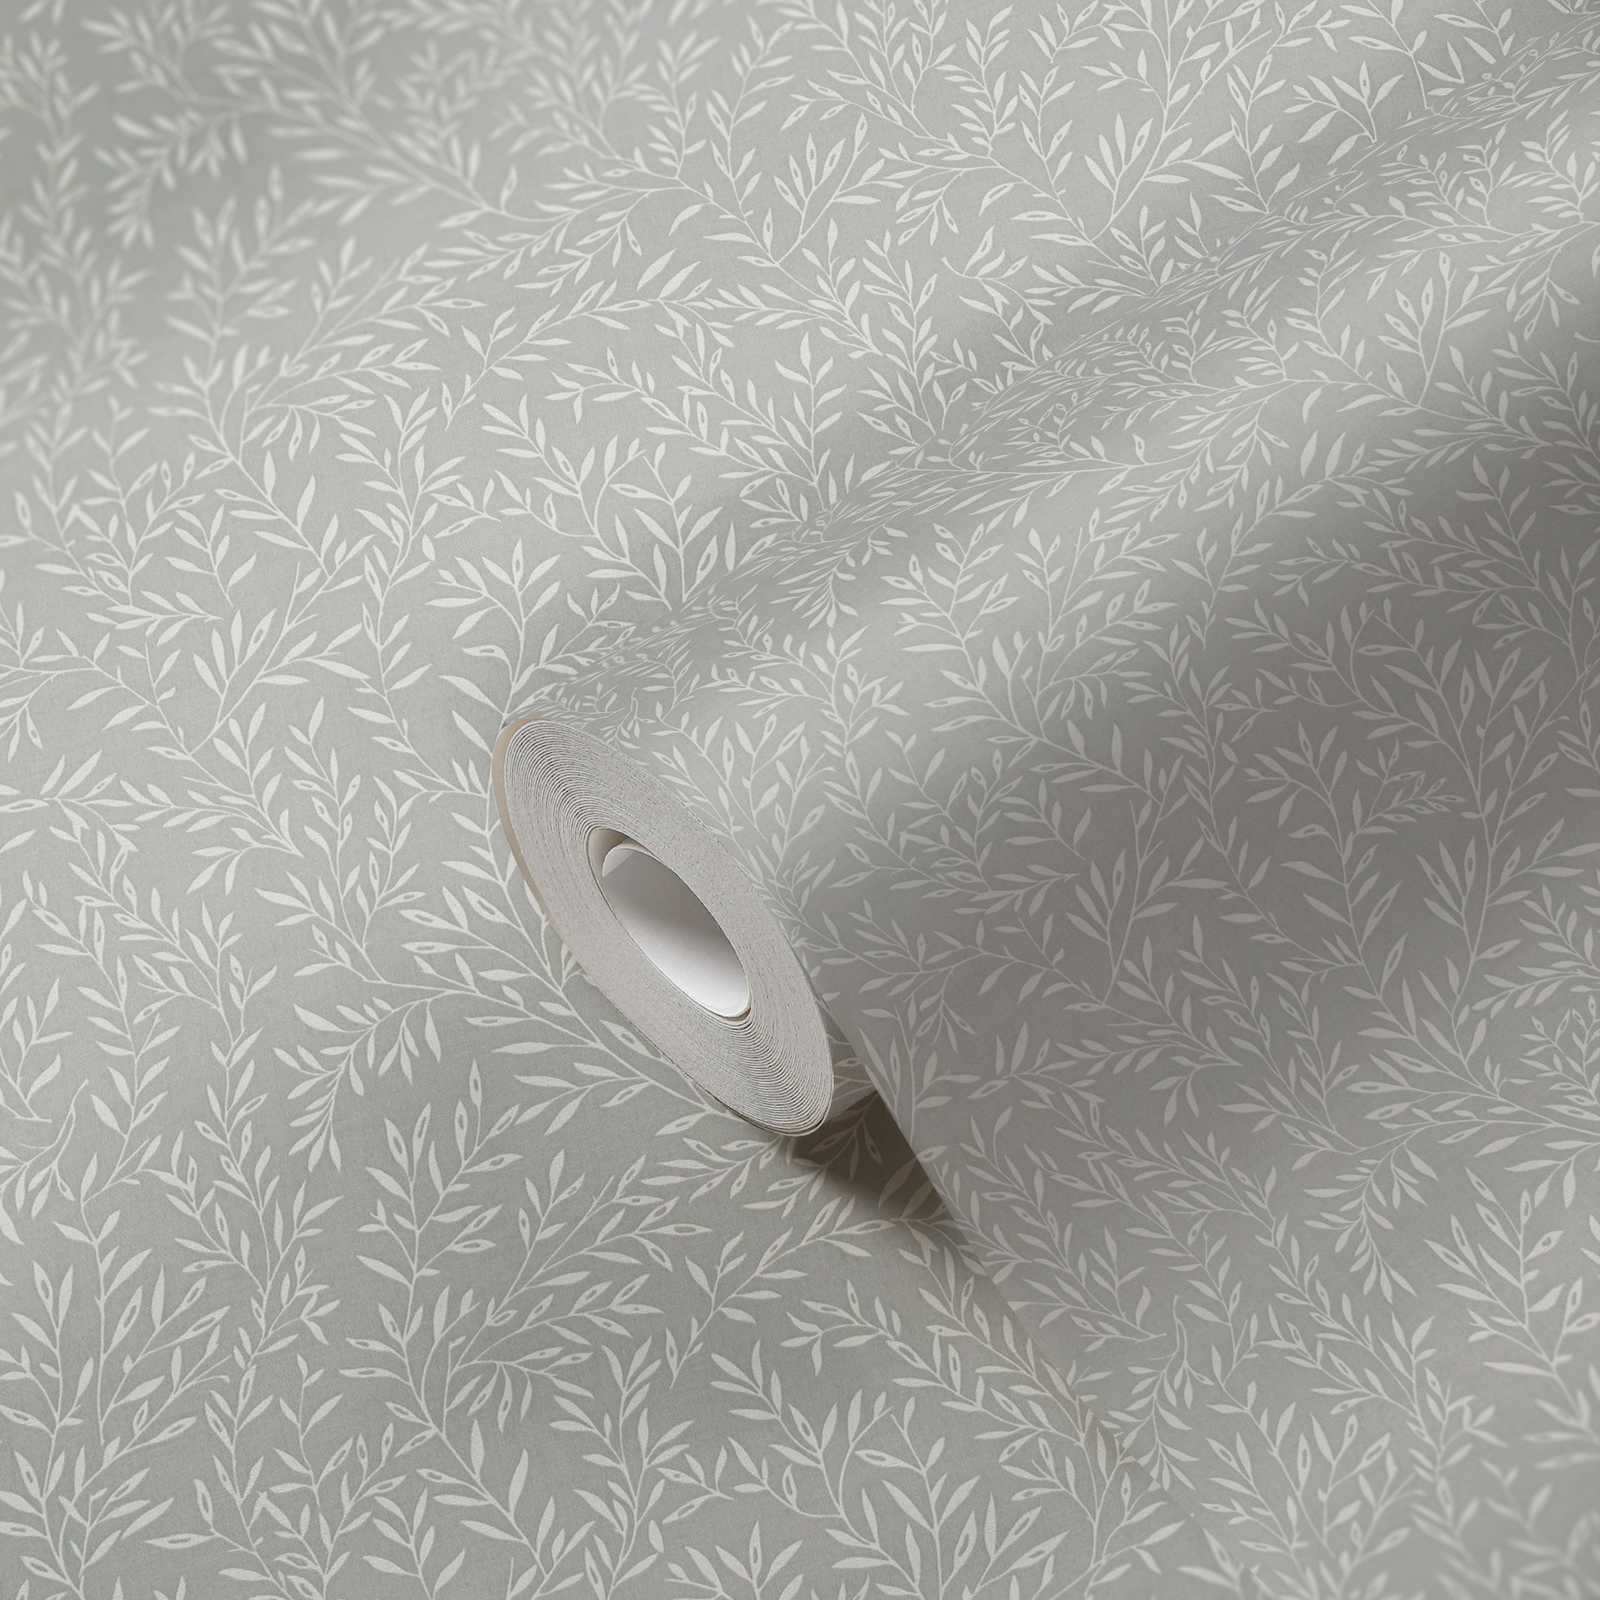             Papier peint avec rinceaux de feuilles style maison de campagne - gris, blanc
        